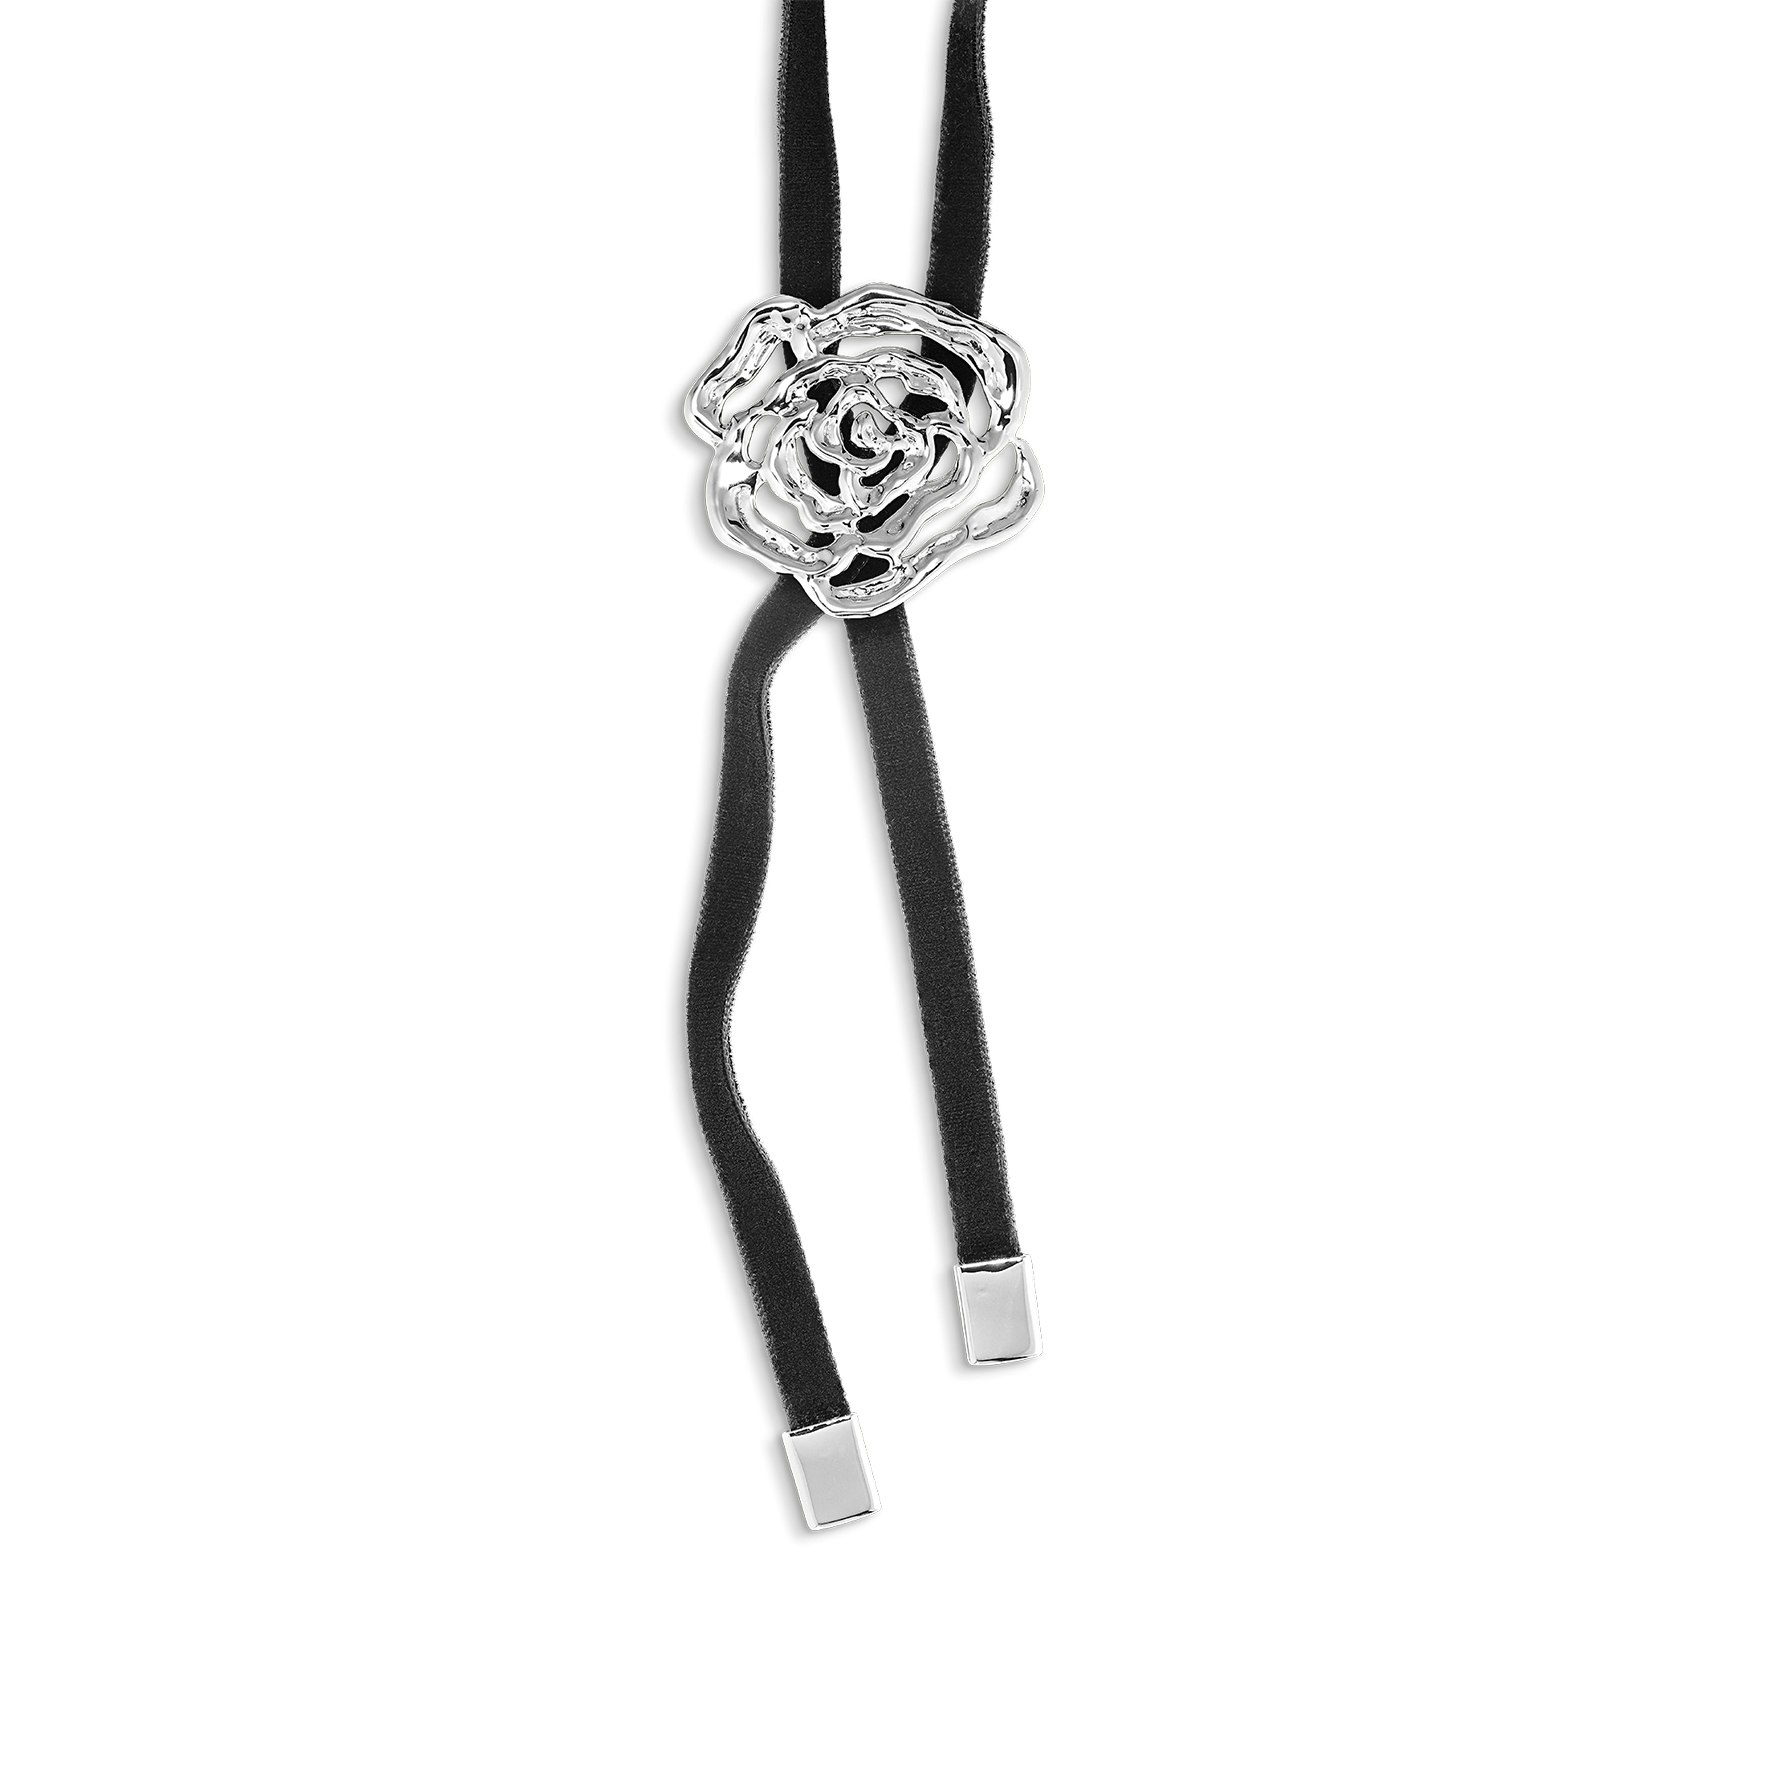 Rose Bolo Tie Necklace fra Jane Kønig i Sølv Sterling 925